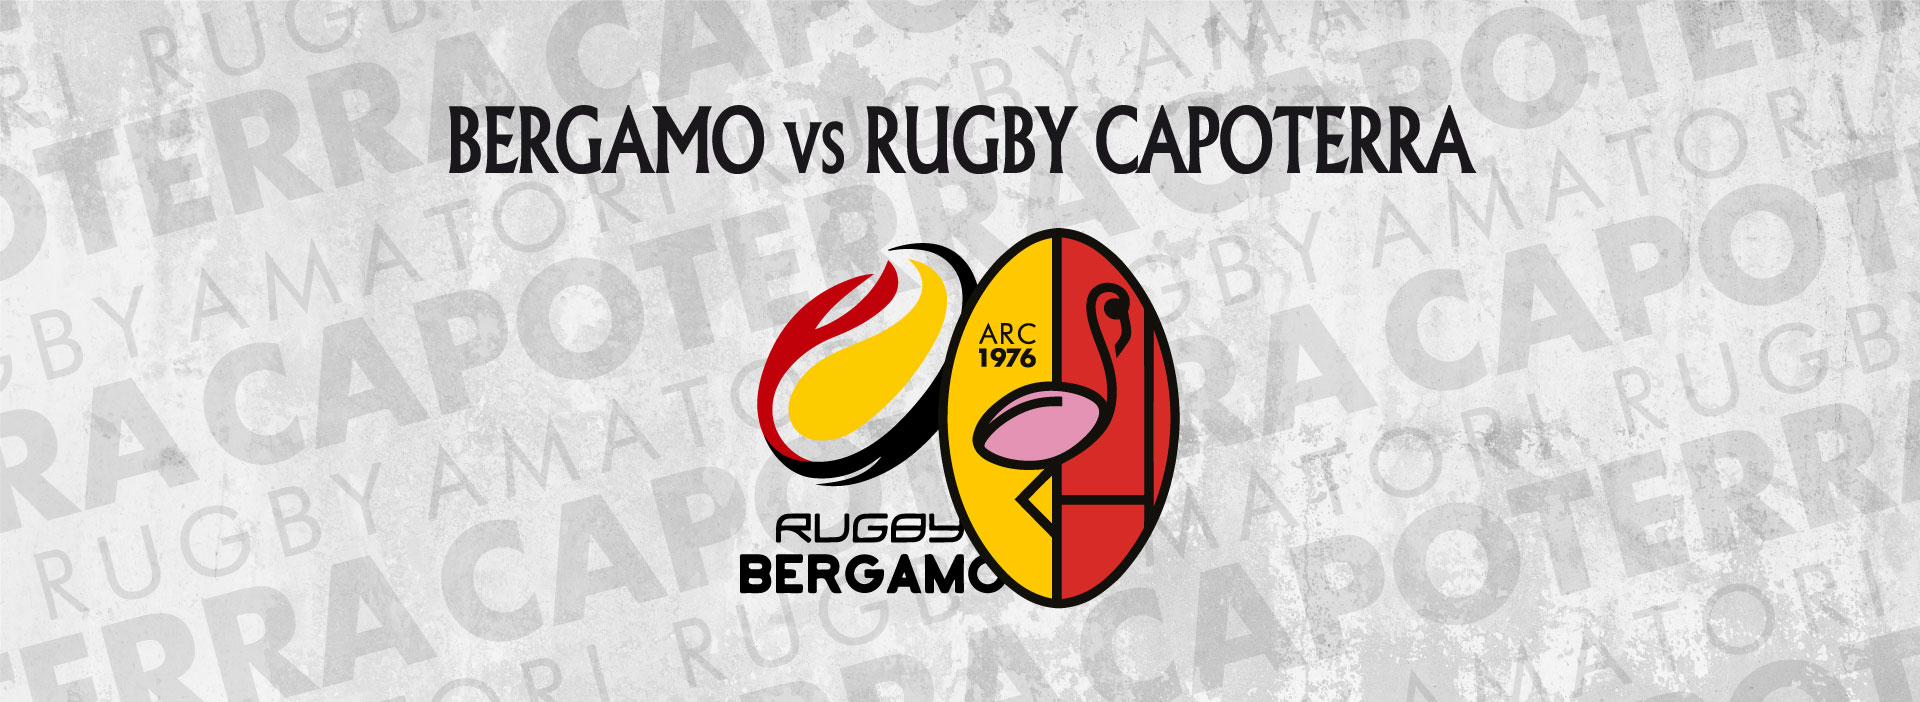 Bergamo vs Rugby Capoterra